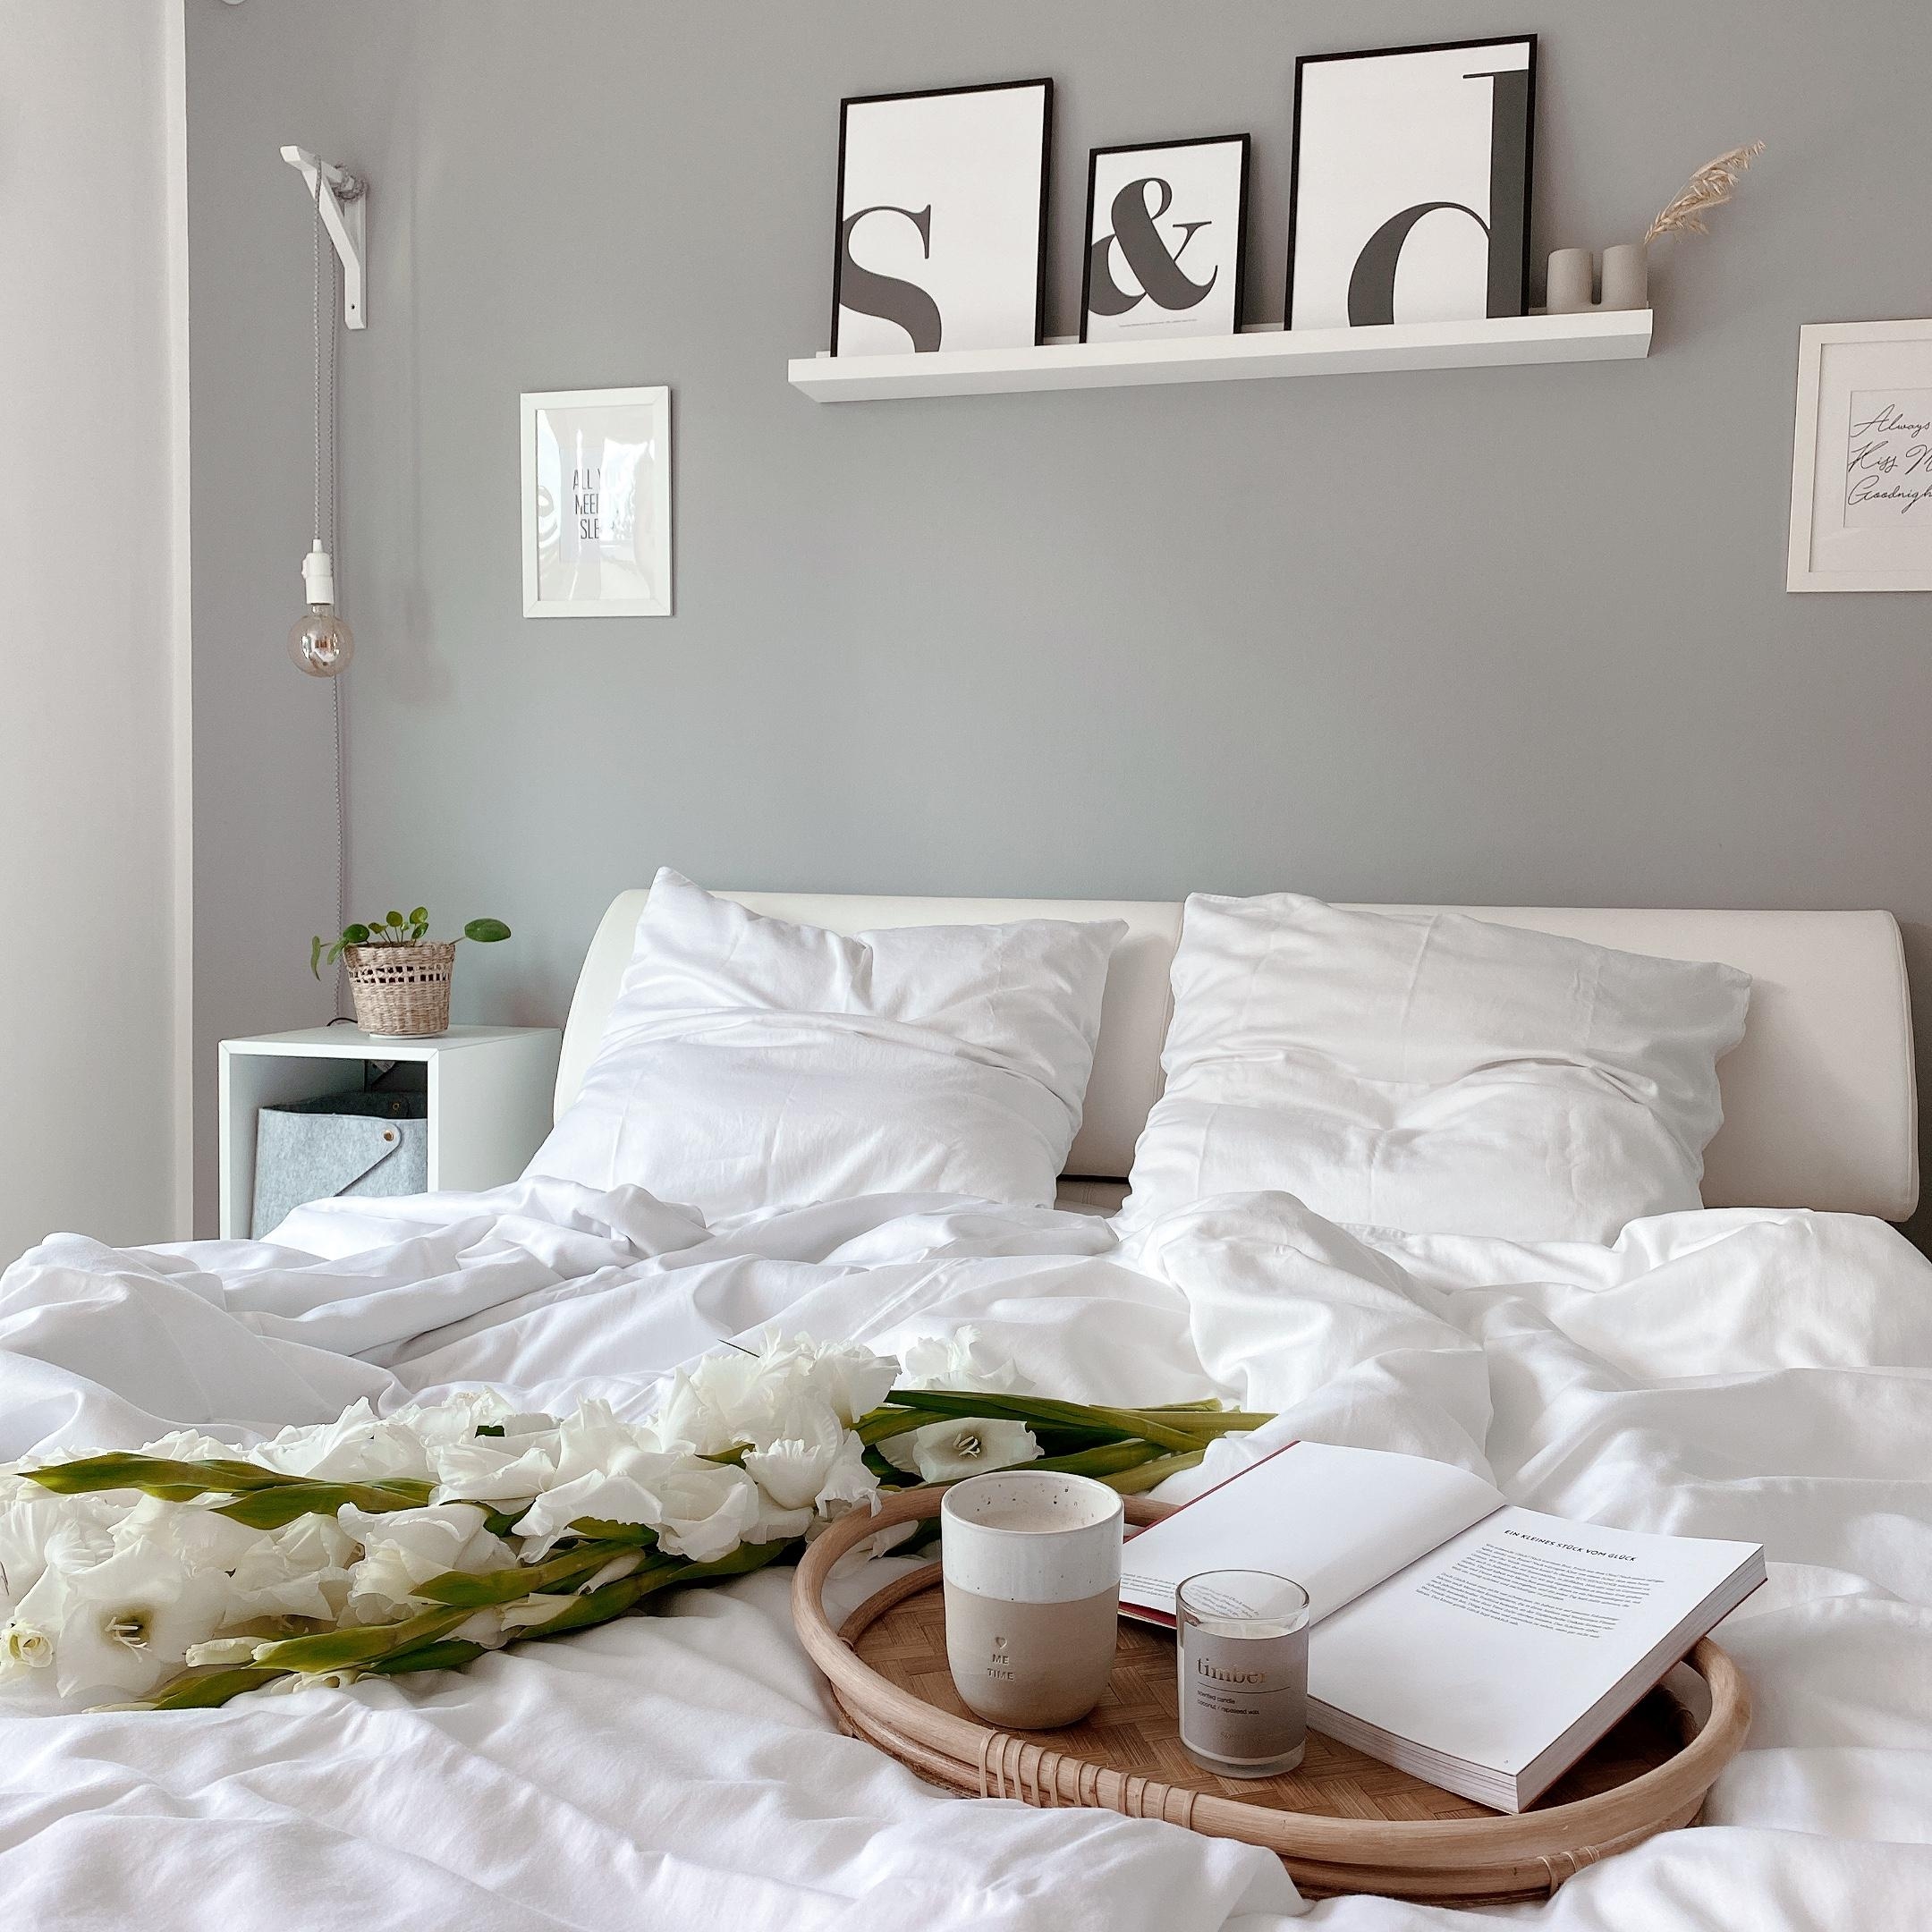 Get cozy. Und Kaffee nicht vergessen. 

@Livinglikeyou

#wolkenfeld #bettwäsche #schlafzimmer #interior #bedroom #kaffee